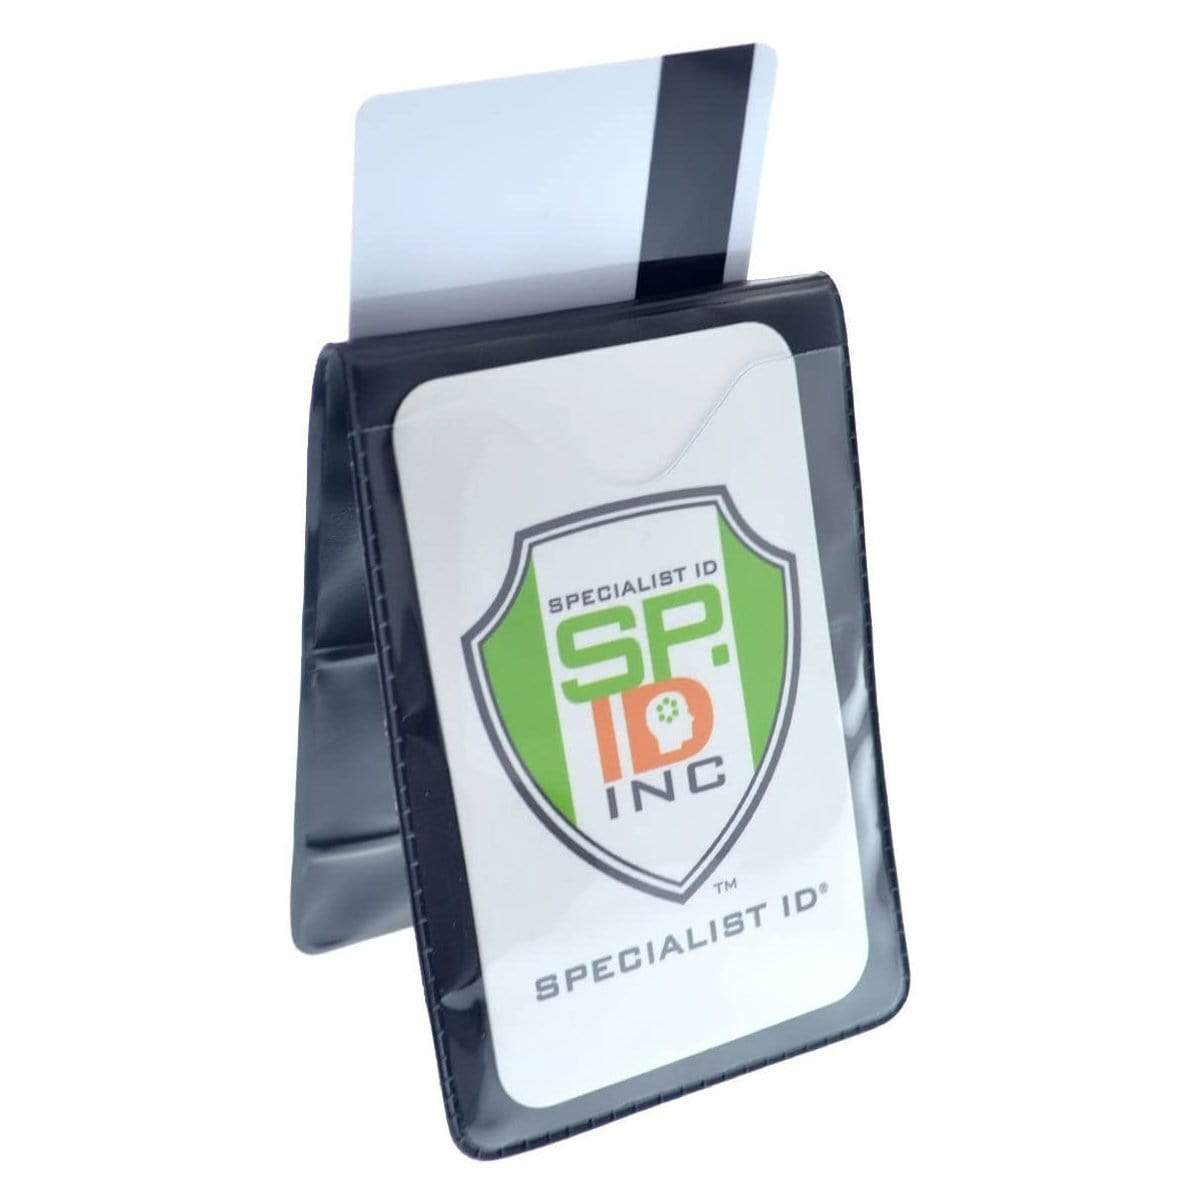 Magnetic Vertical Double Pocket Badge Holder